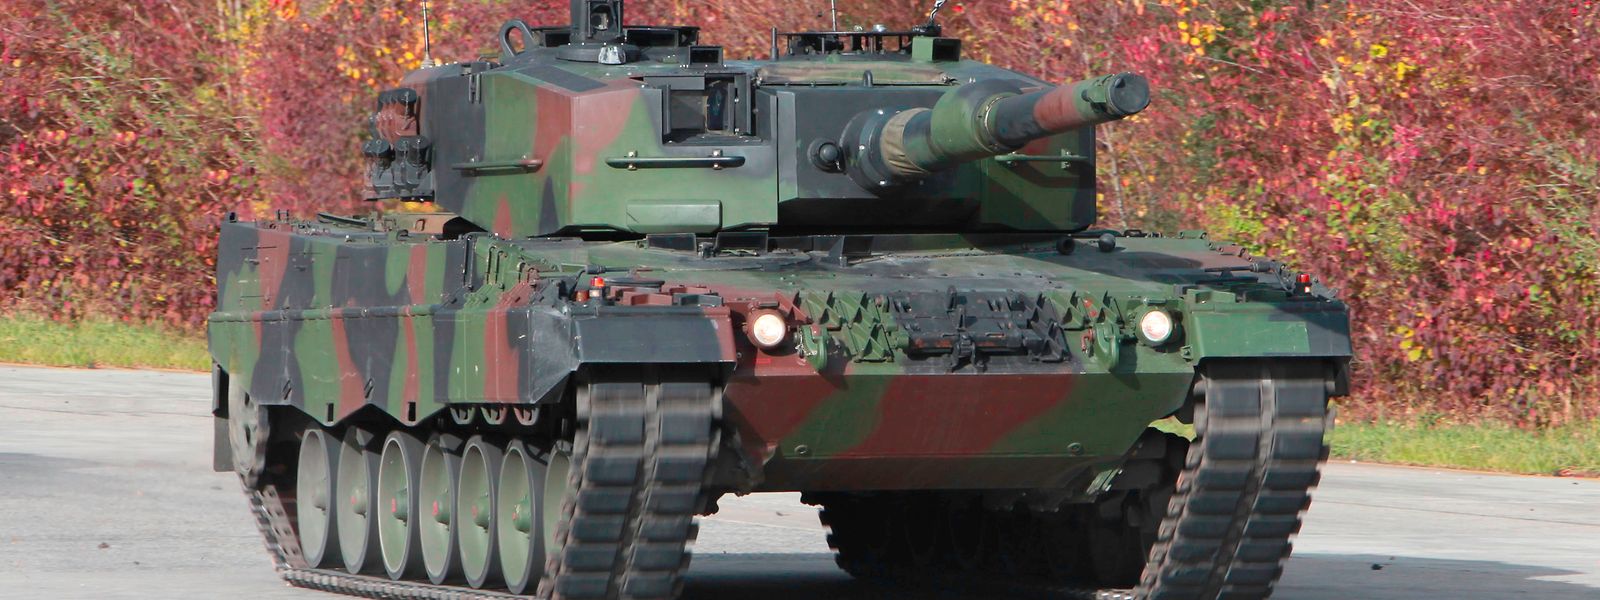 Das Handout des Rüstungskonzerns Krauss-Maffei Wegmann zeigt einen Kampfpanzer vom Typ Leopard 2A4.  